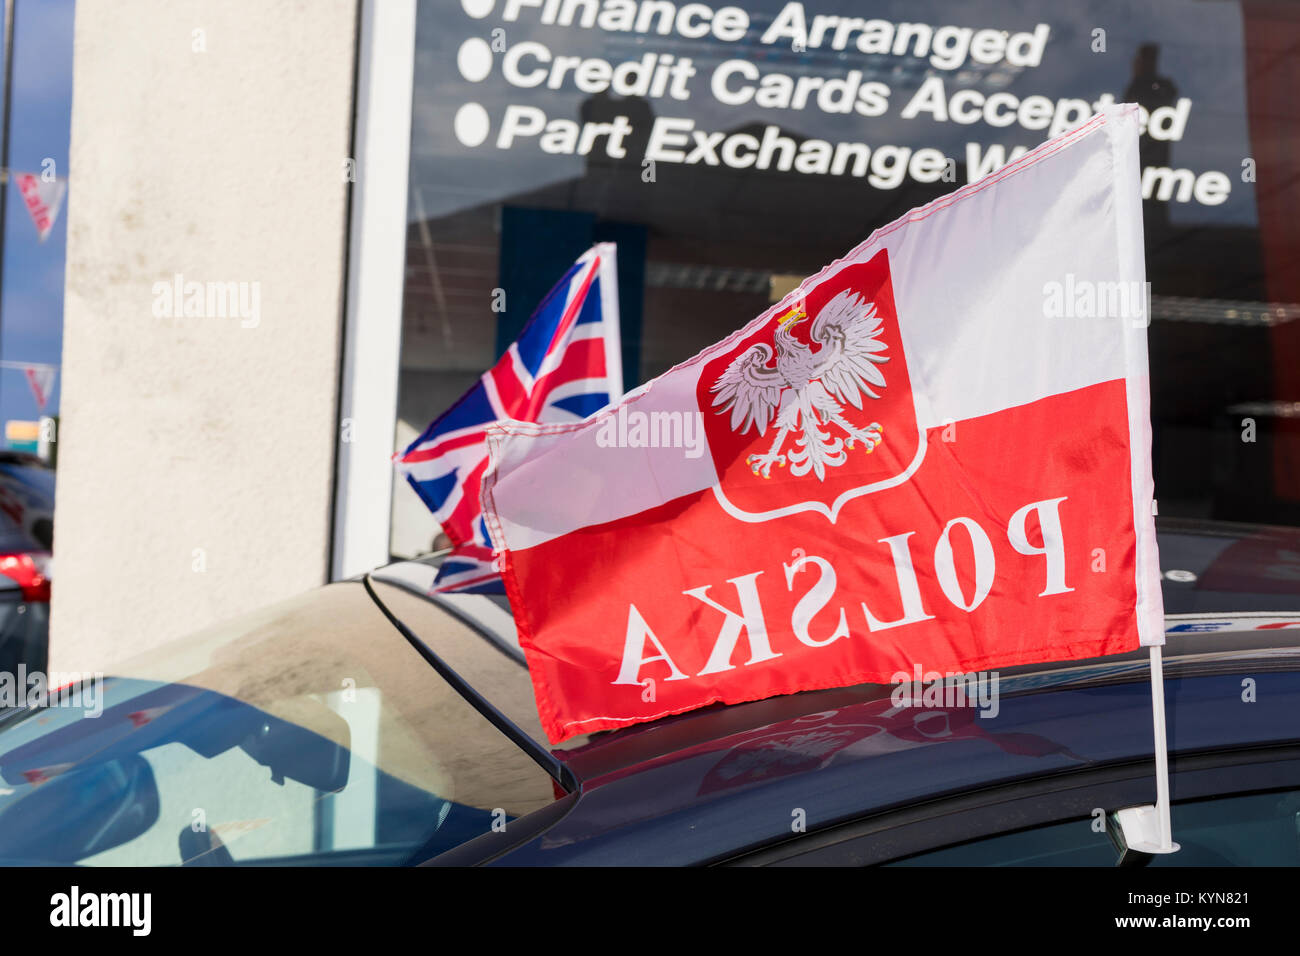 Bandiera polacca con la parola "polska' scritto su di esso in posizione di retromarcia e un'Unione Jack flag in background Foto Stock